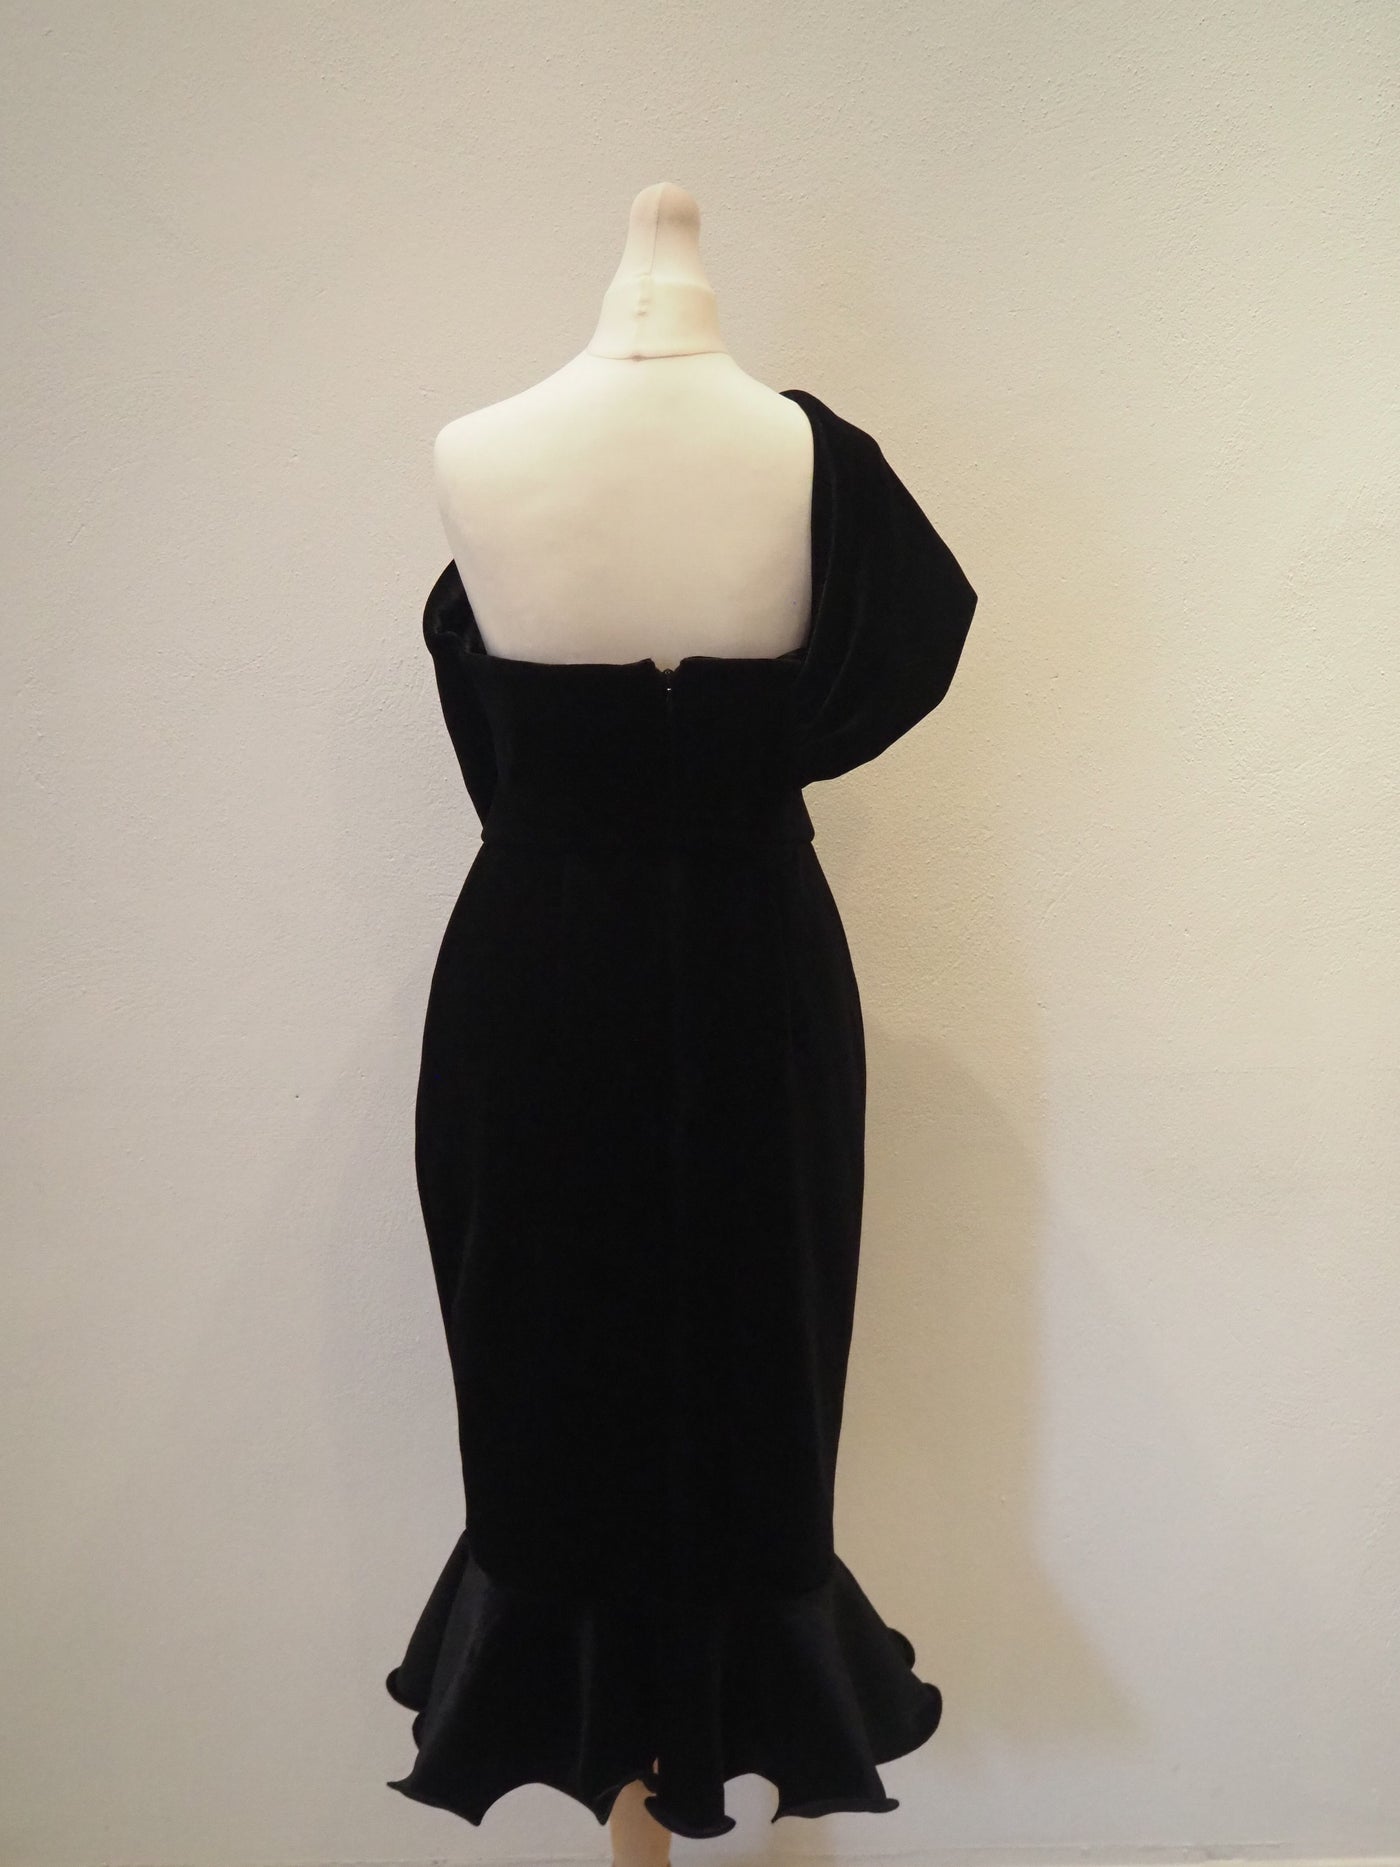 ASOS Black Velvet Off Shoulder Dress Size 10